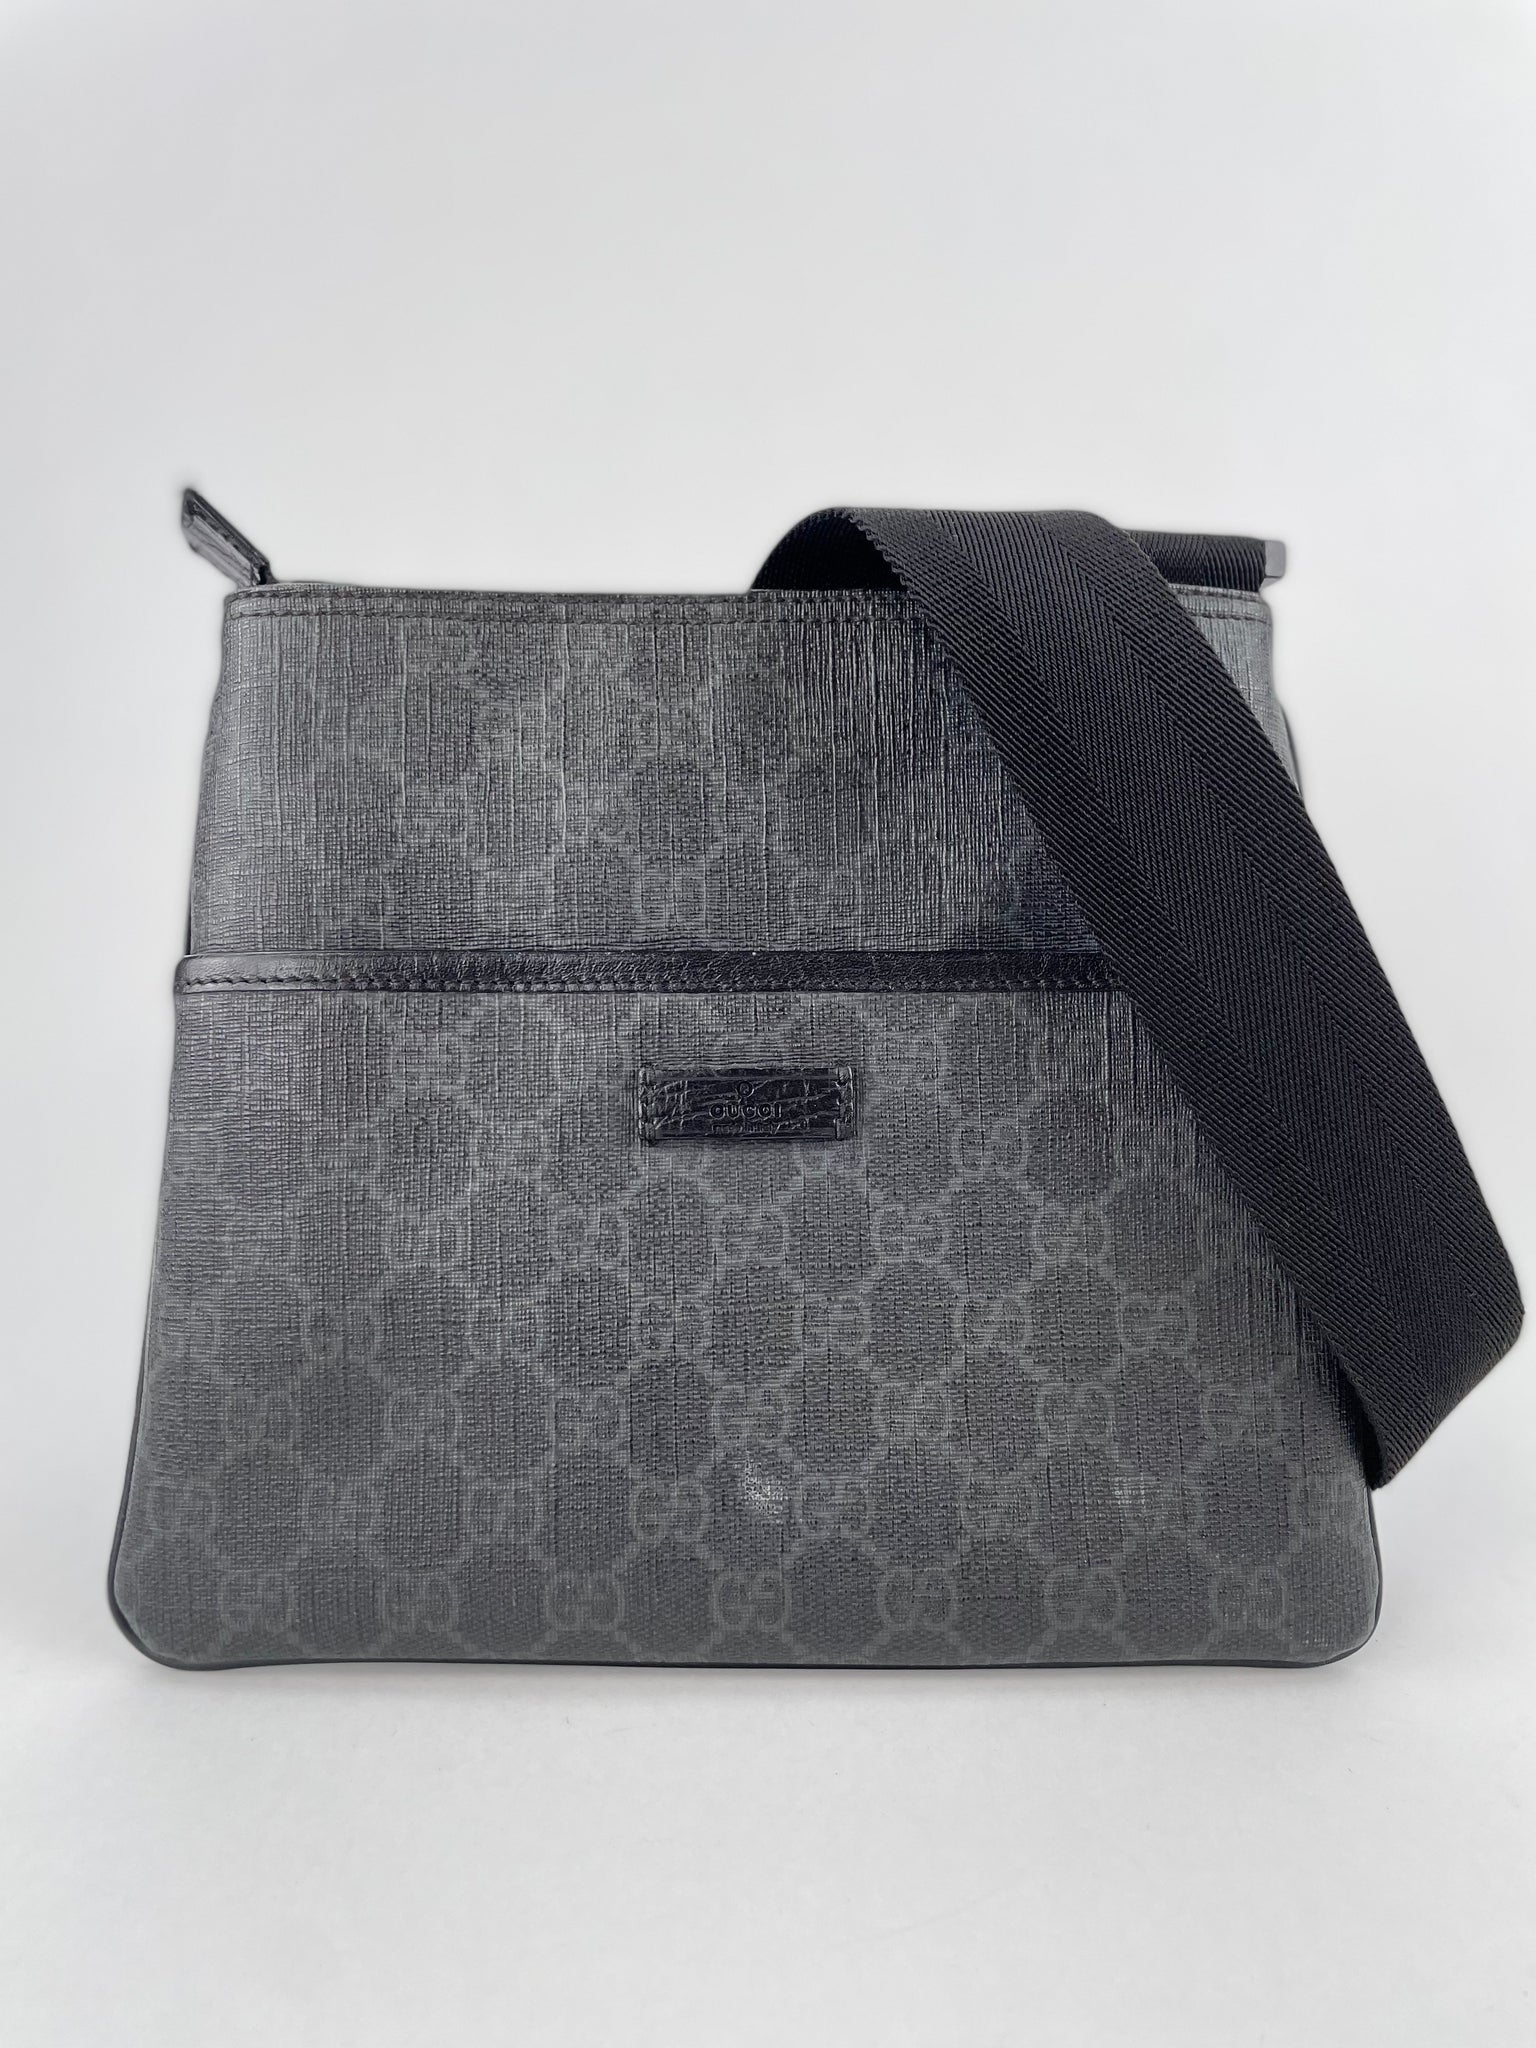 Gucci, GG Supreme Canvas Micro Cross-body Bag, Mens